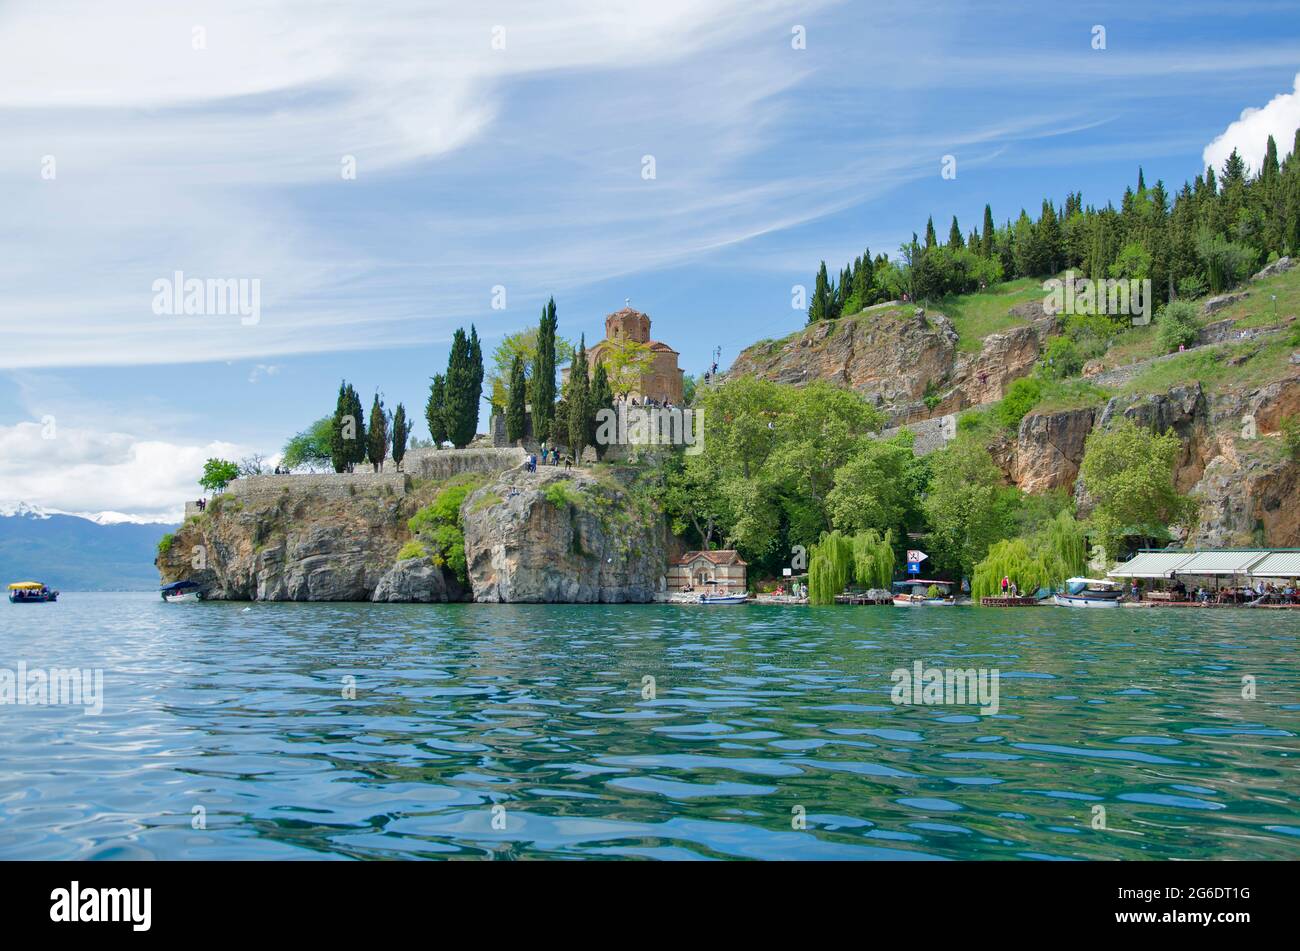 Splendida vista dal lago con barche albero, pietre, spiaggia, montagna su cielo azzurro Foto Stock